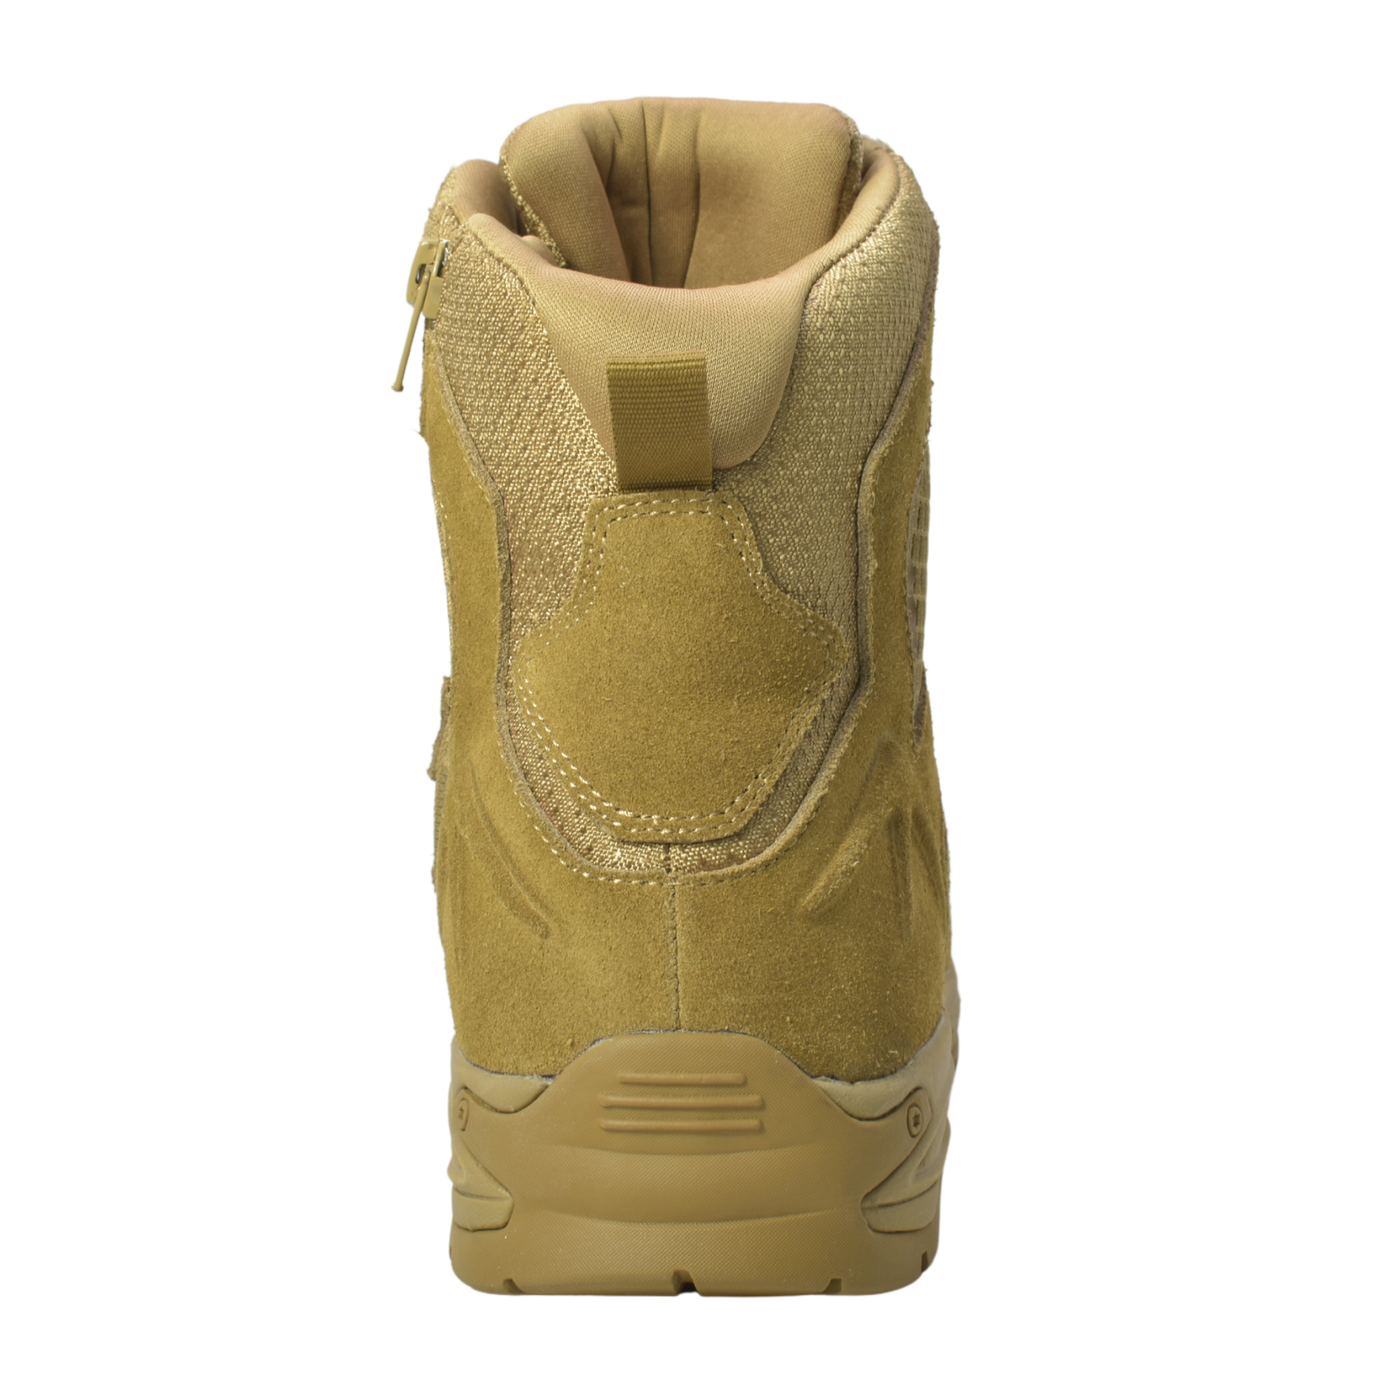 Sandbox - Men's 8" Coyote Suede Tactical Boot w/ Side Zipper & Waterproof membrane - KT1010